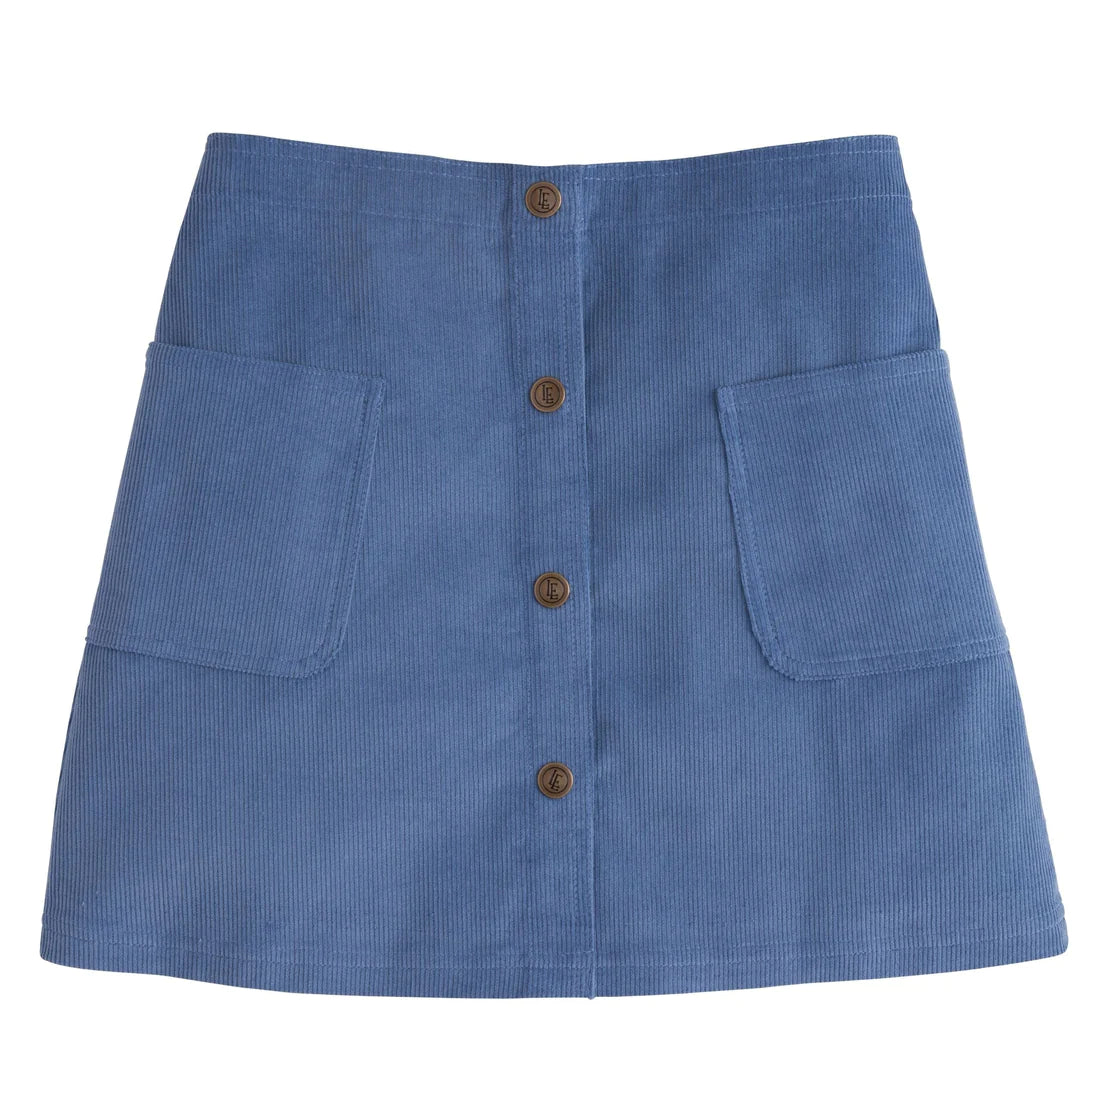 Emily Pocket Skirt - Stormy Blue Corduroy - Breckenridge Baby